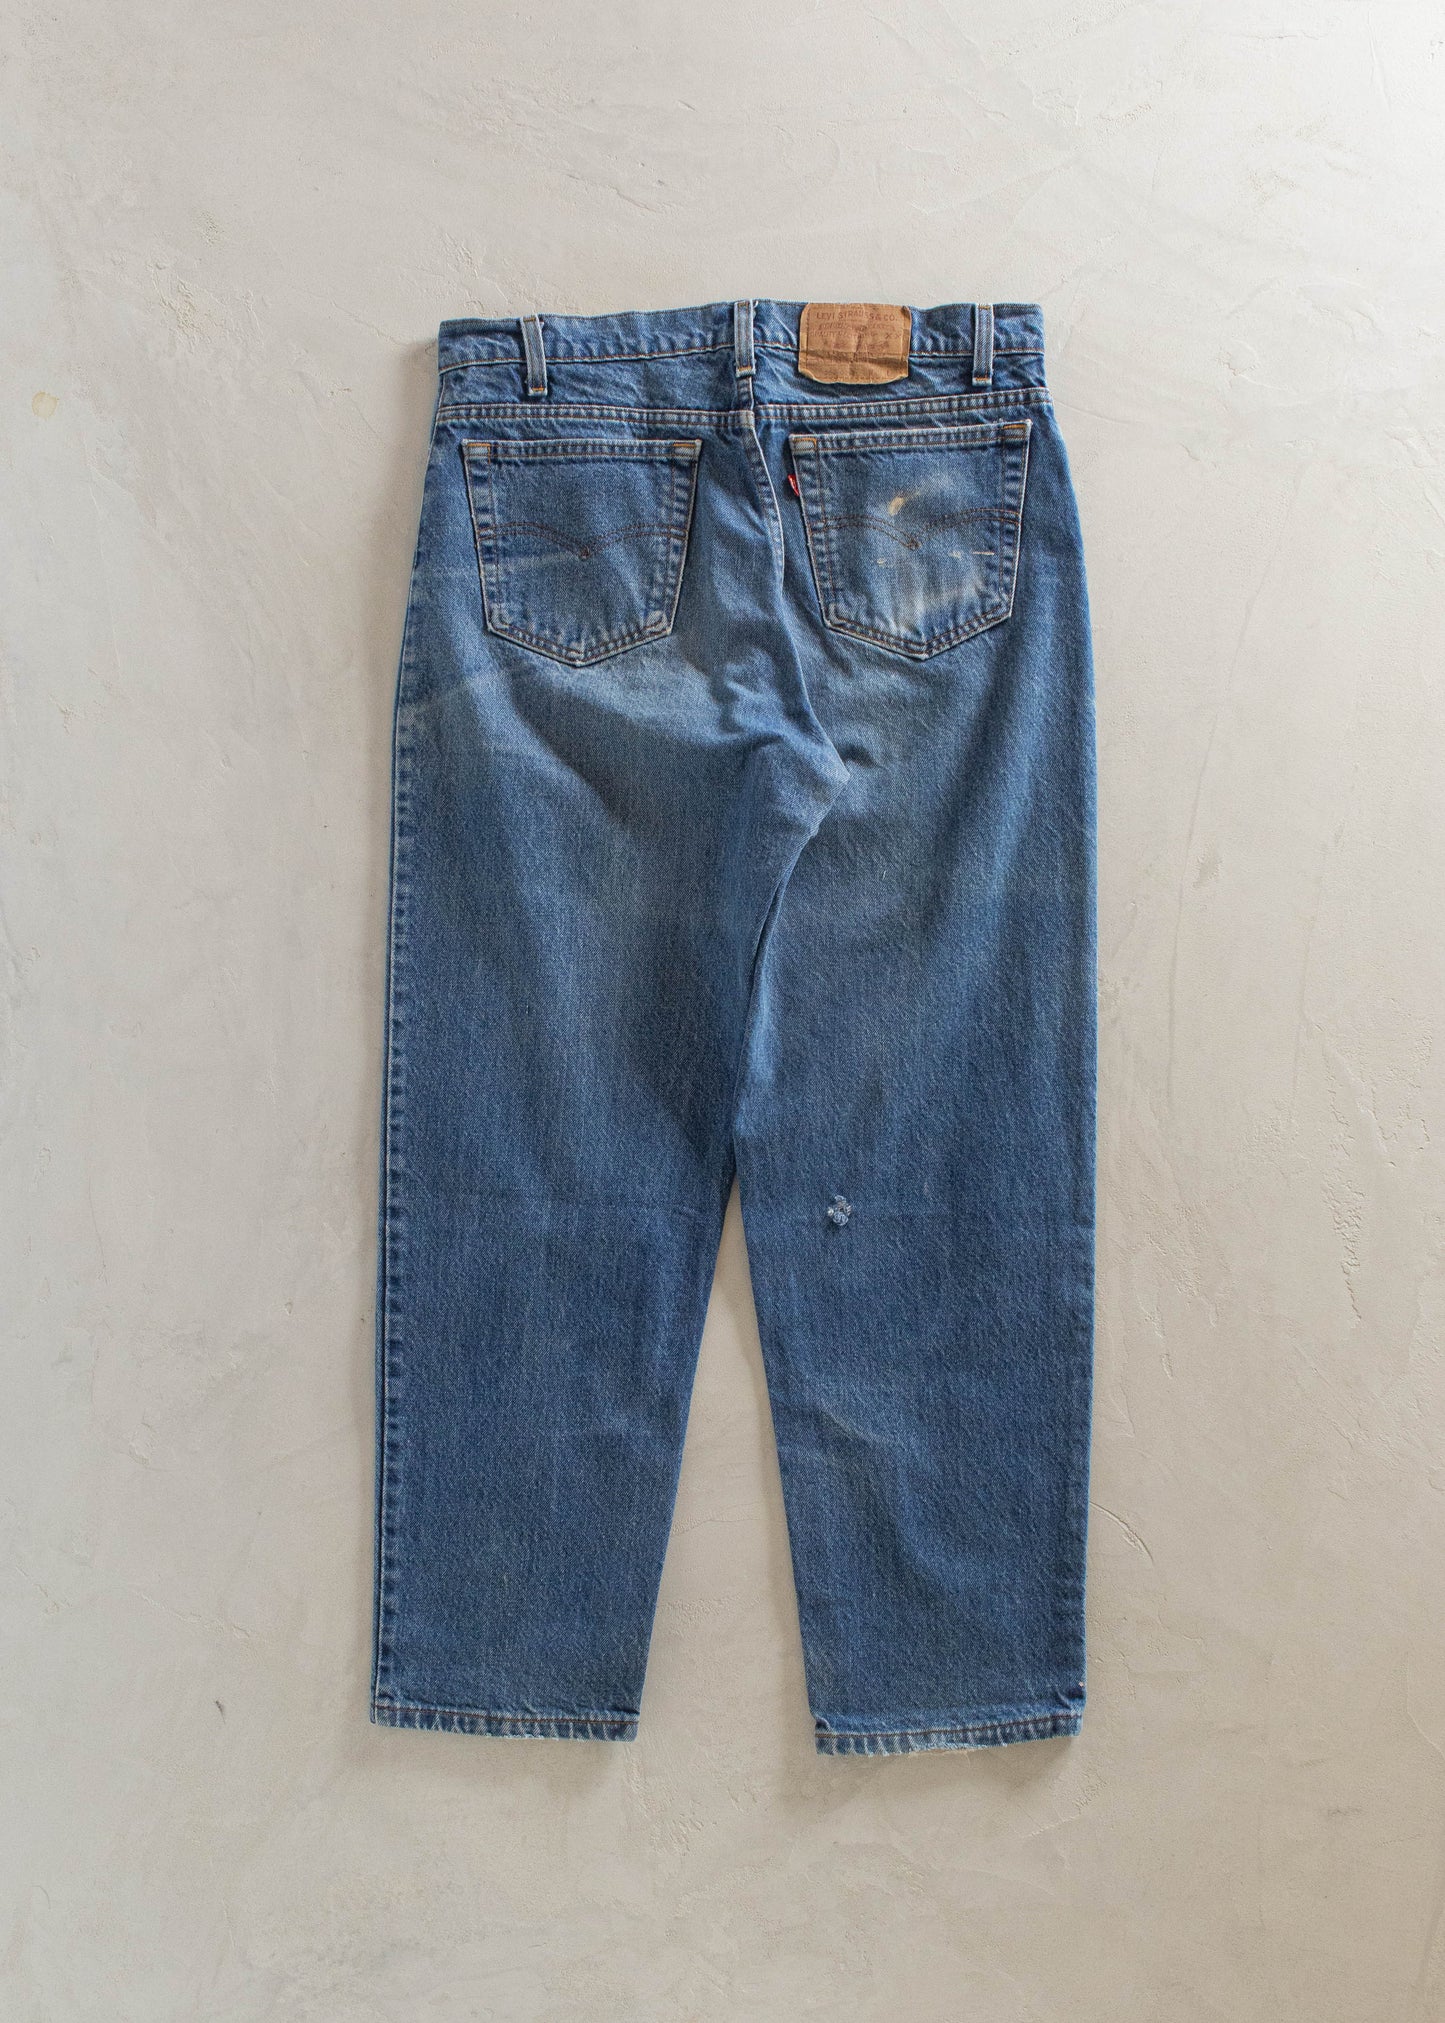 1980s Levi's 550 Midwash Jeans Size Women's 32 Men's 34